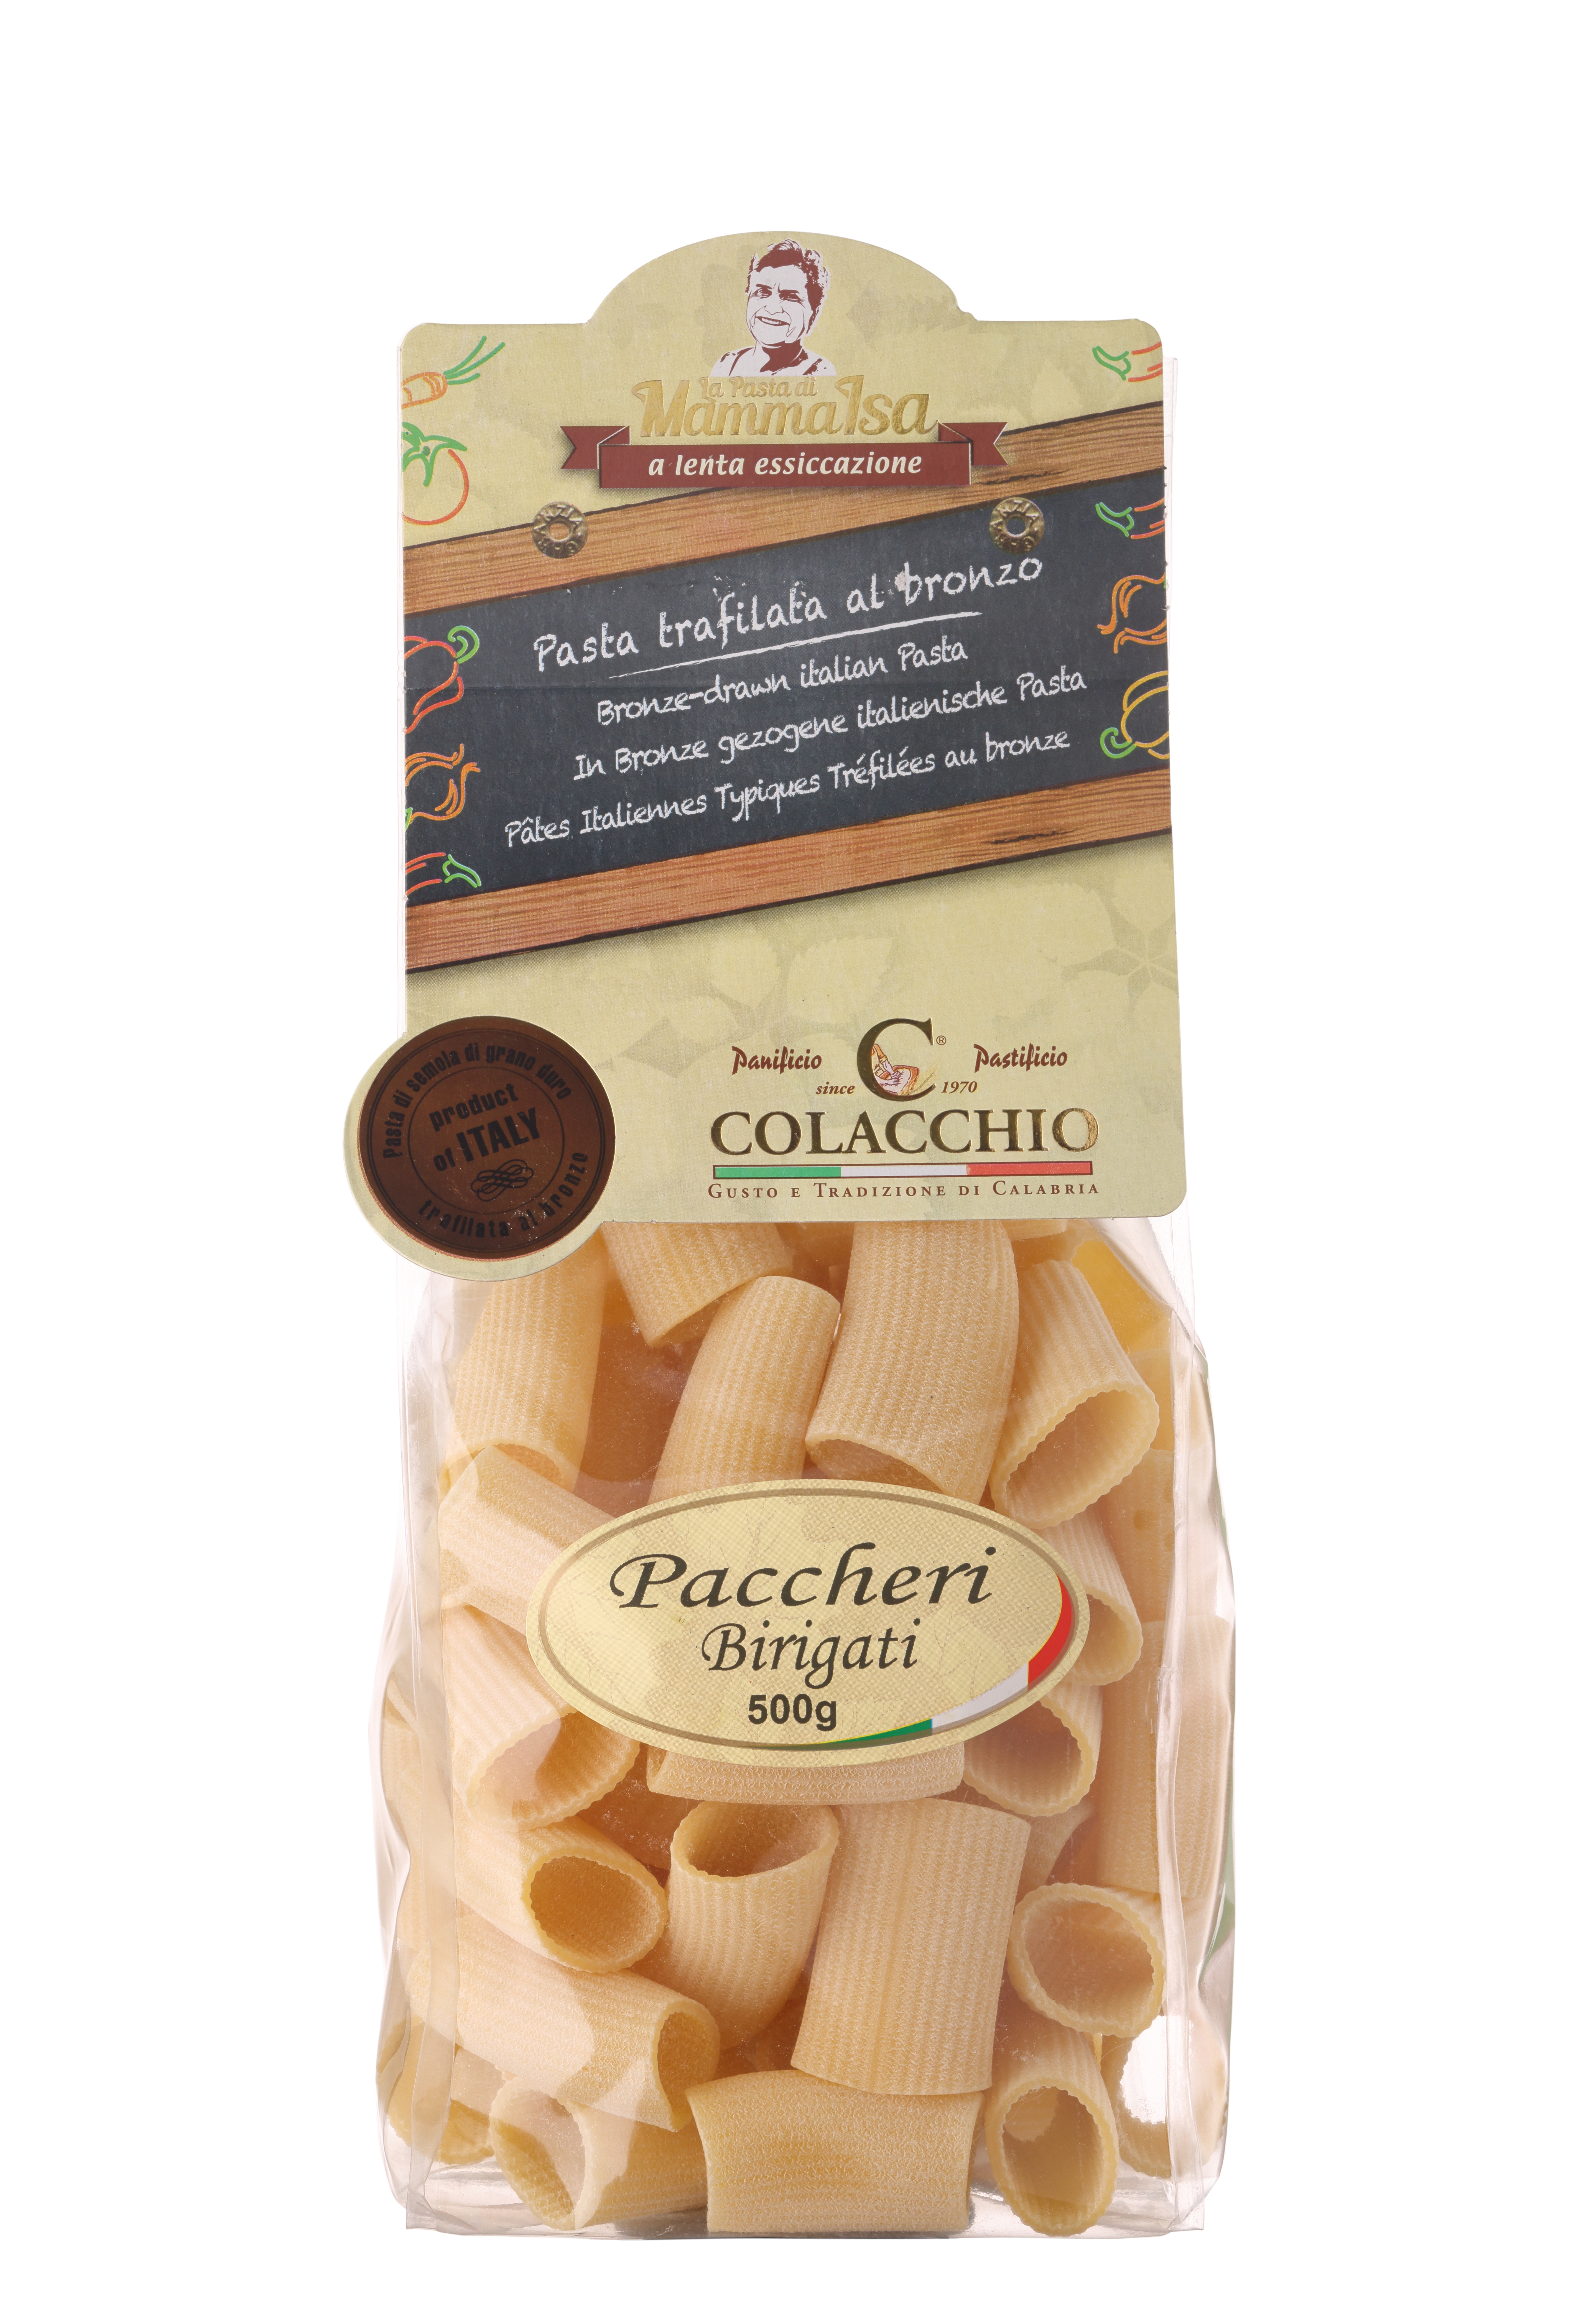 Colacchio, "Paccheri Birigati" Pasta, 500g